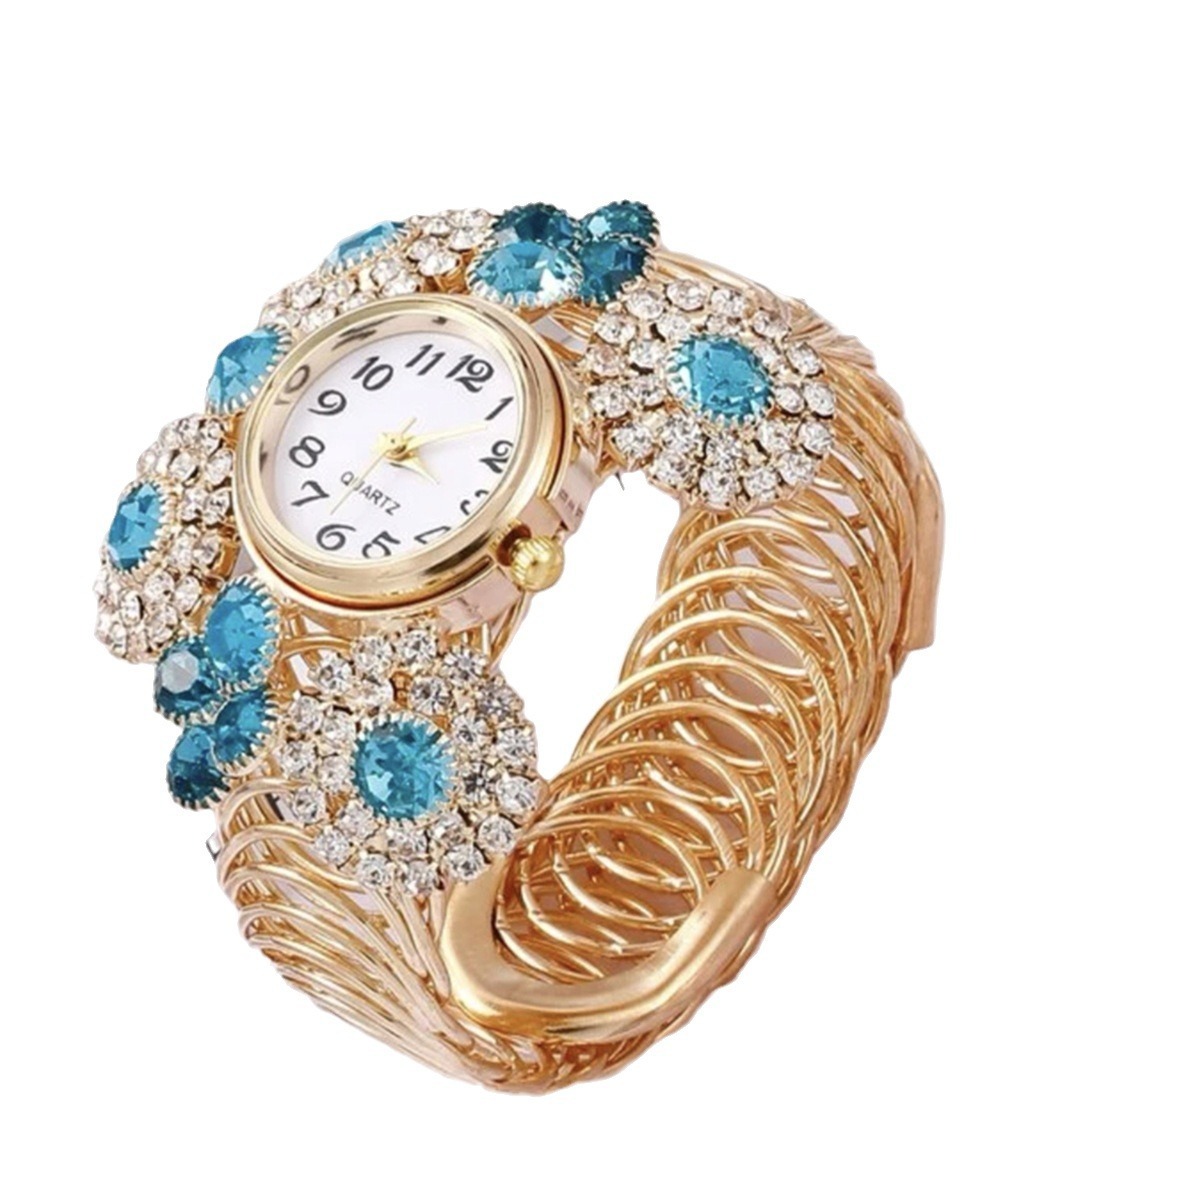 Bohemian Rhinestone Inlaid with Water Diamond and Sky Star Charm Women’s Bracelet Watch Fashion Light Luxury Quartz Watch